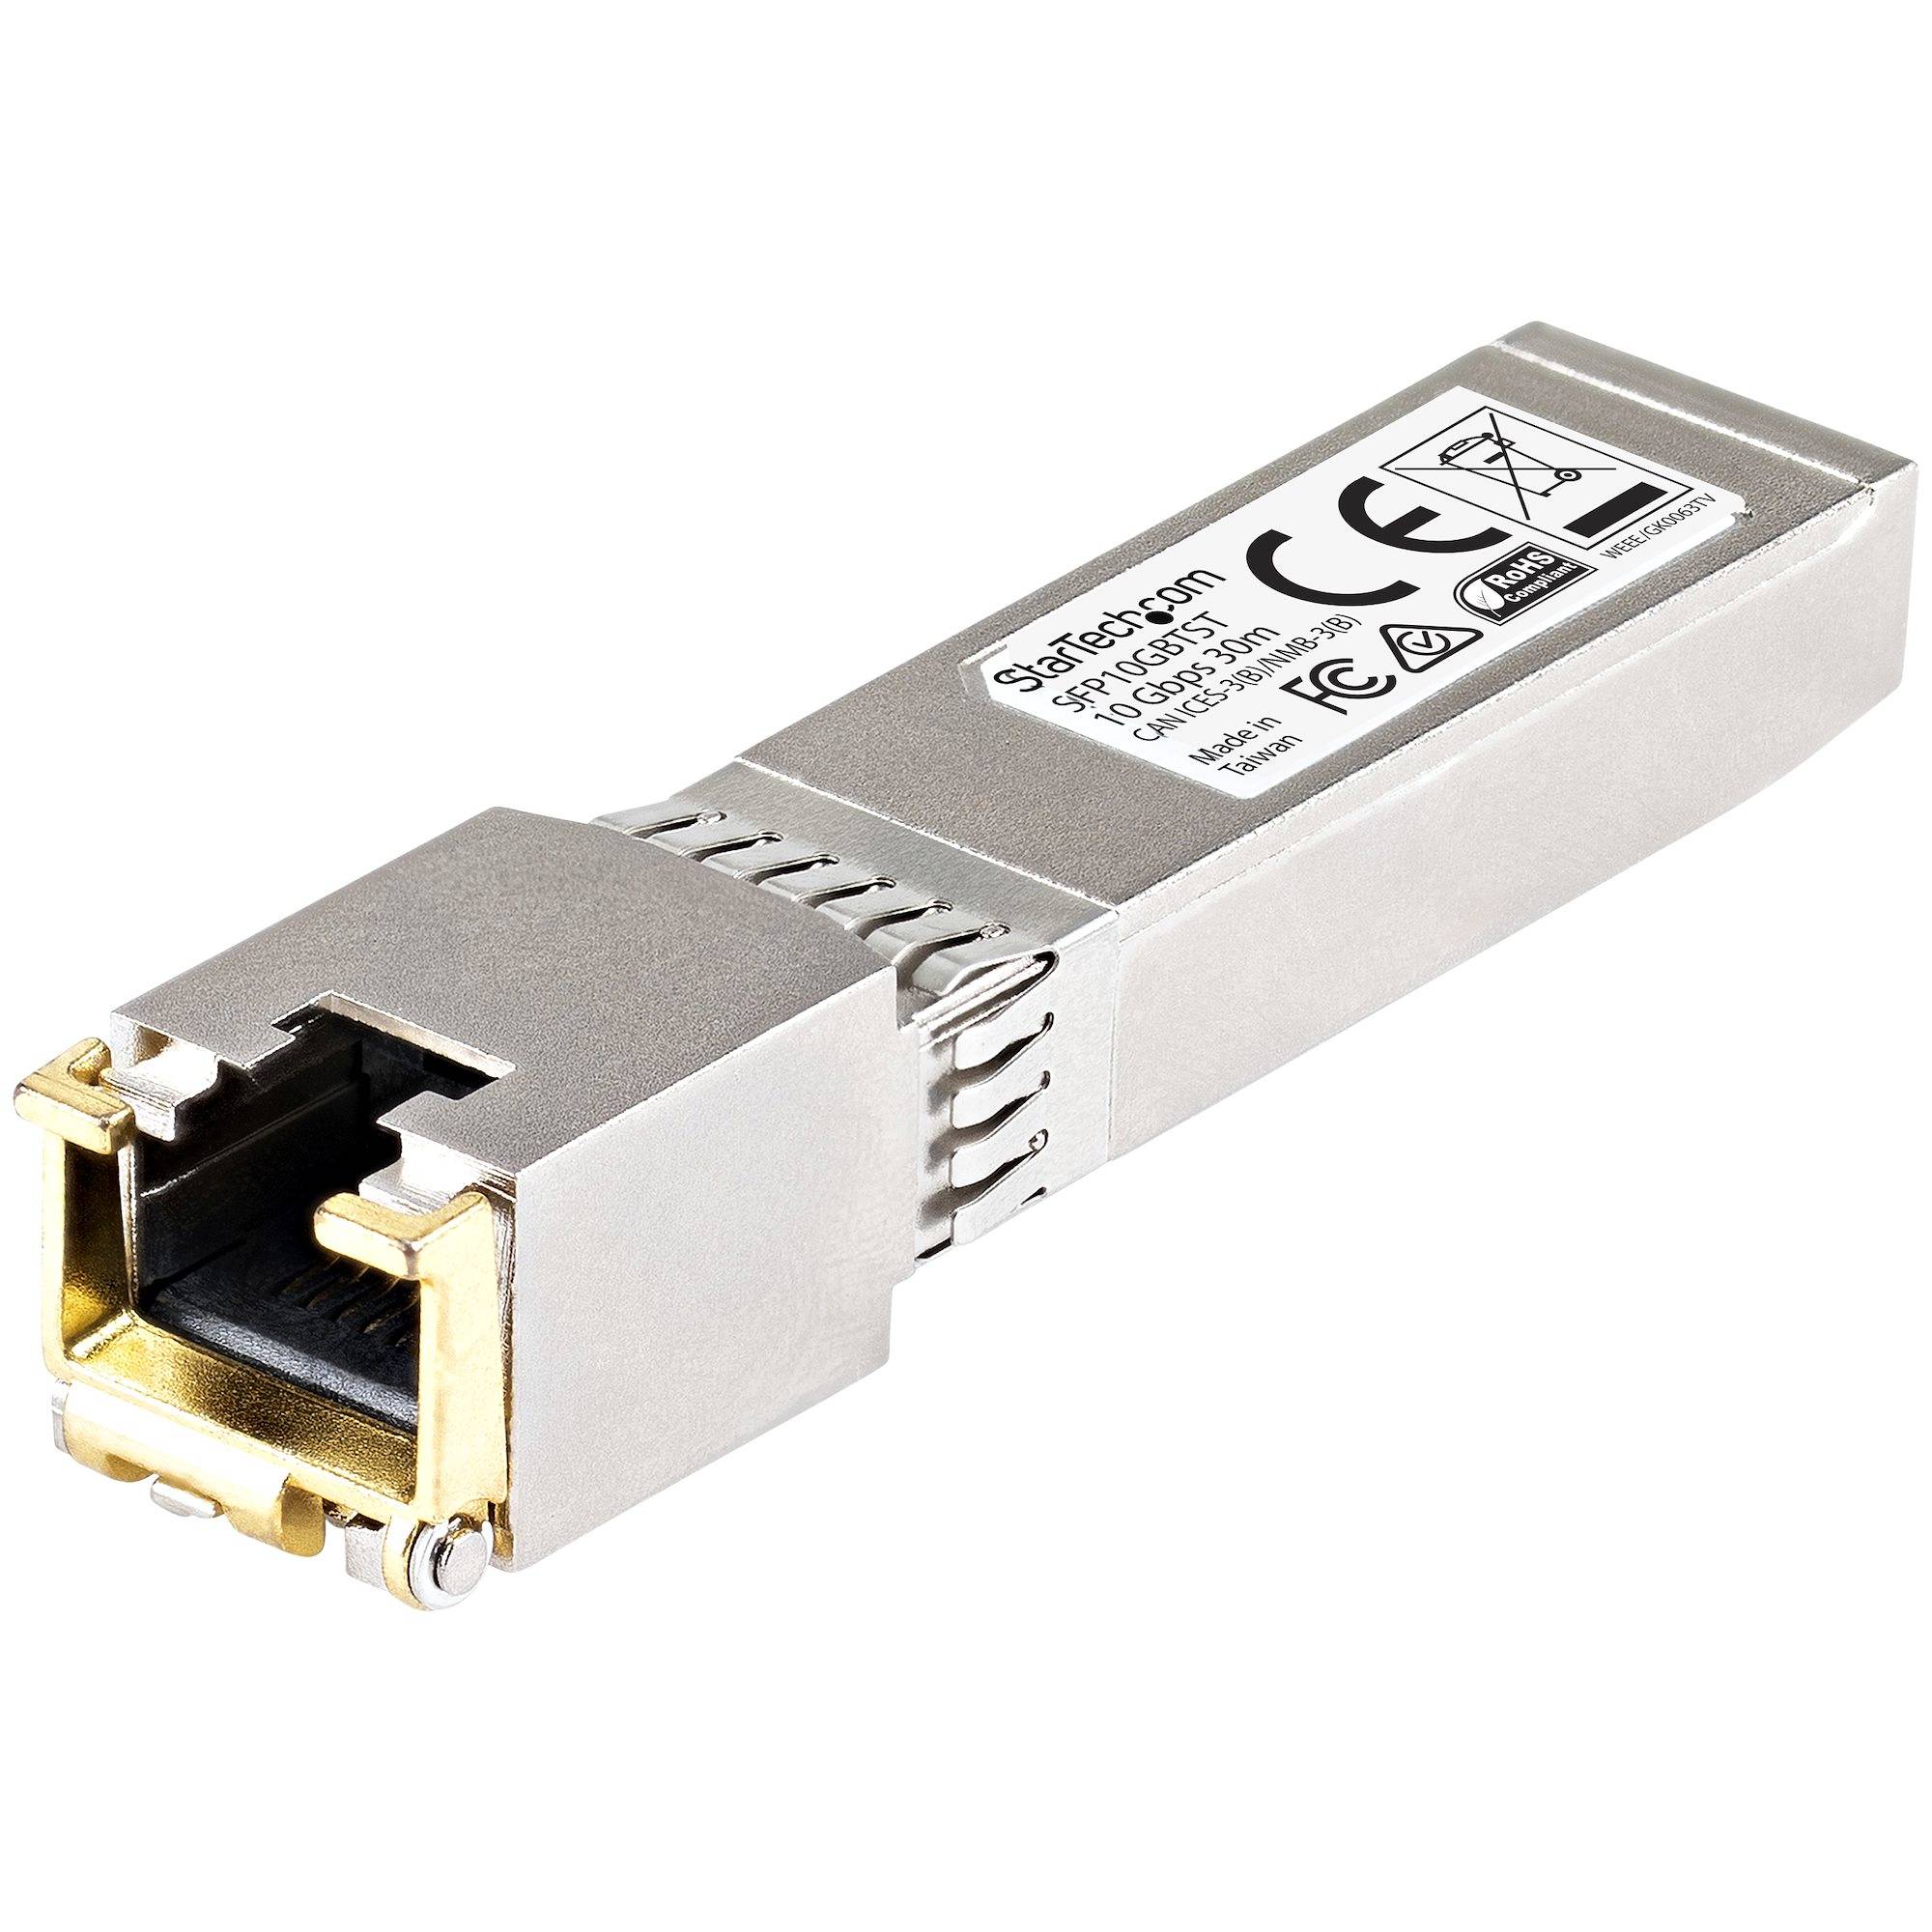 Rca Informatique - Image du produit : CISCO COMPATIBLE 10GBASE-T SFP+ RJ45 SFP+ MODULE - 10GB MINI G   IN